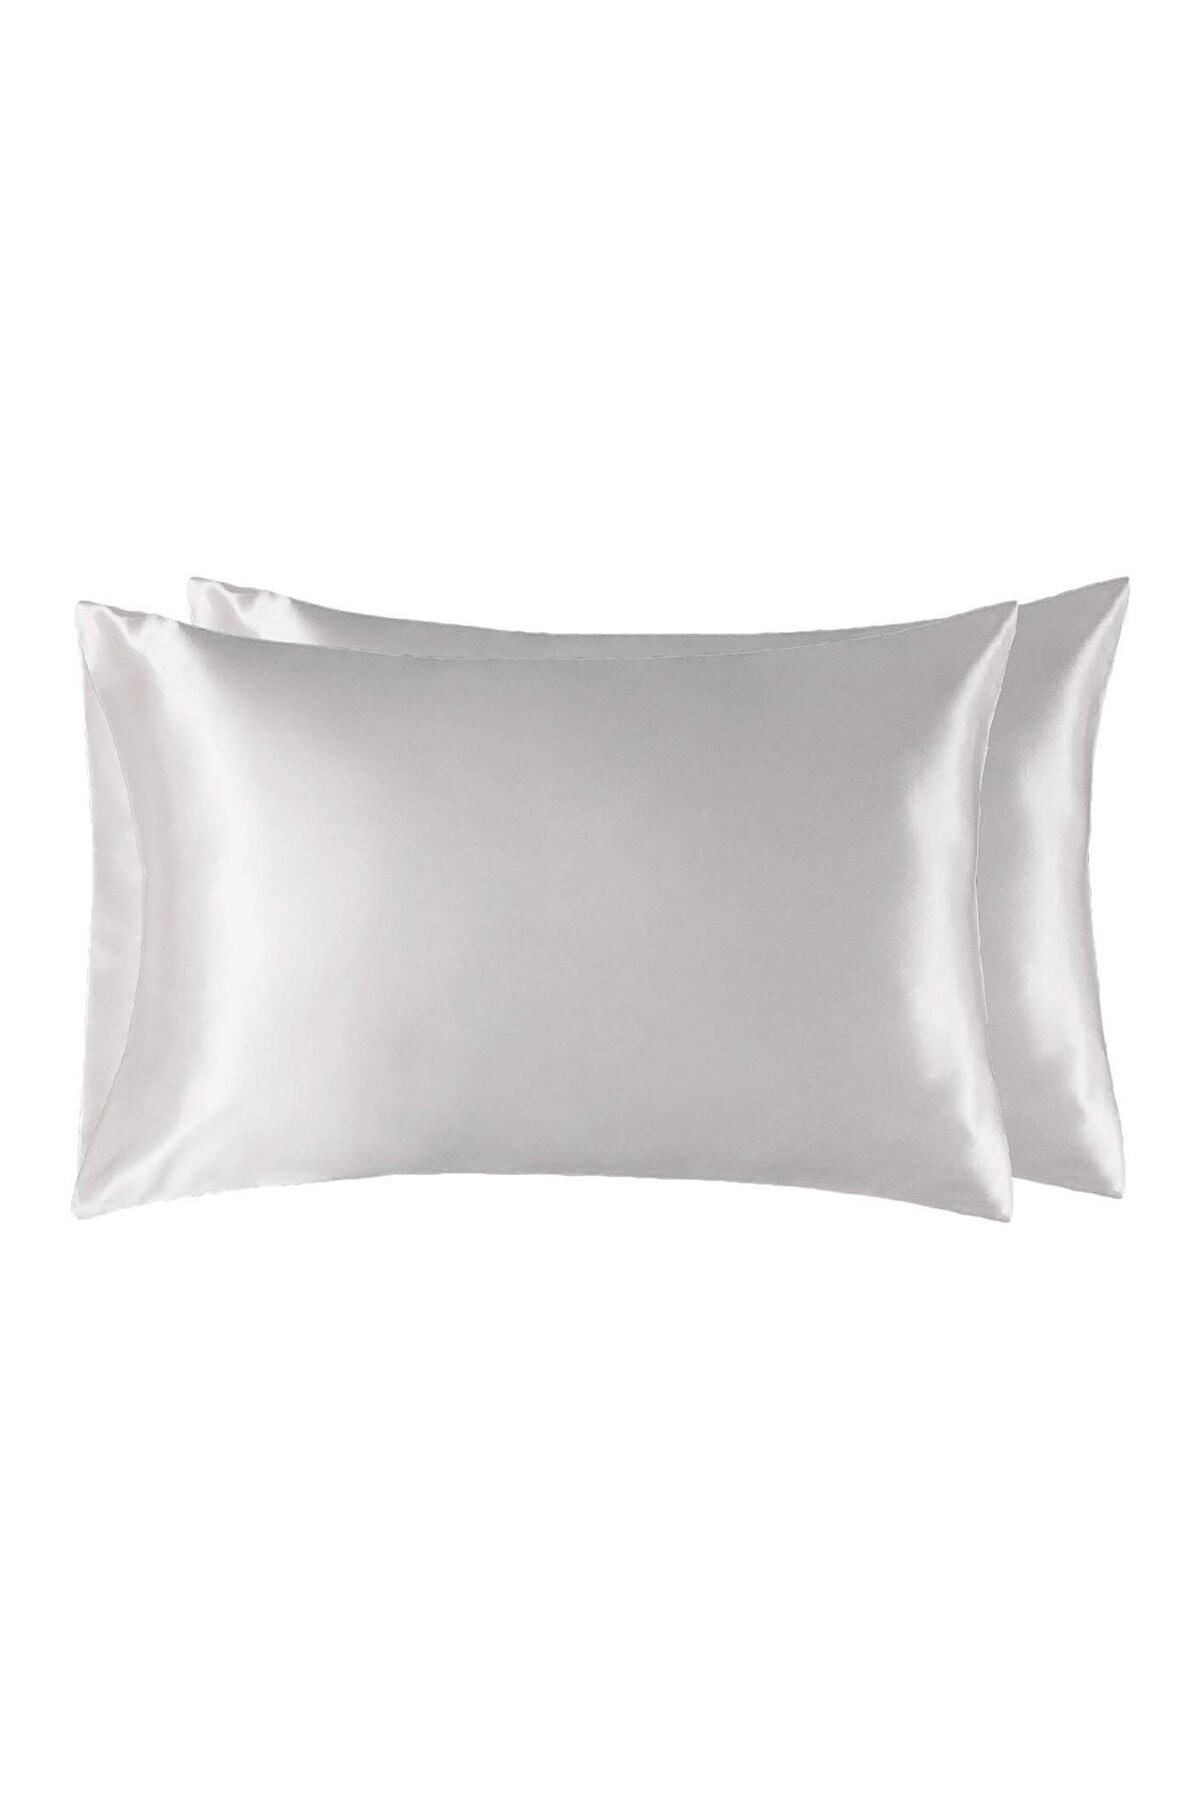 AYHANHOME %100 Pamuklu Saten Yastık Kılıfı Beyaz Renk 2 Adet 50x70cm